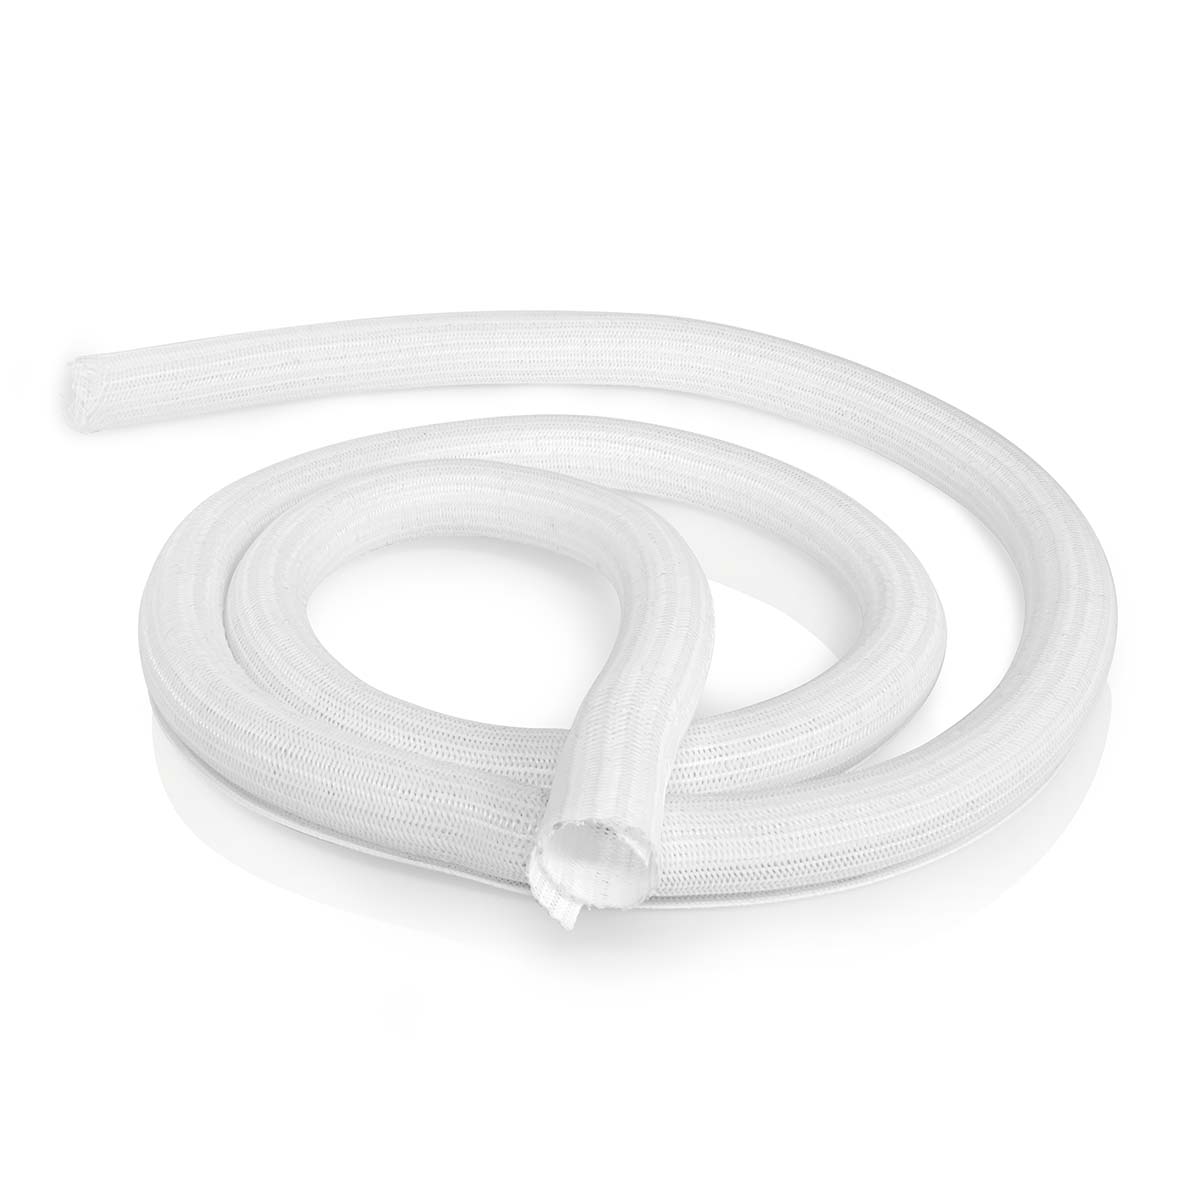 Cable management | Pouzdro | 2.00 m | 1 kusů | Maximální tloušťka kabelu: 30 mm | Nylon | Bílá